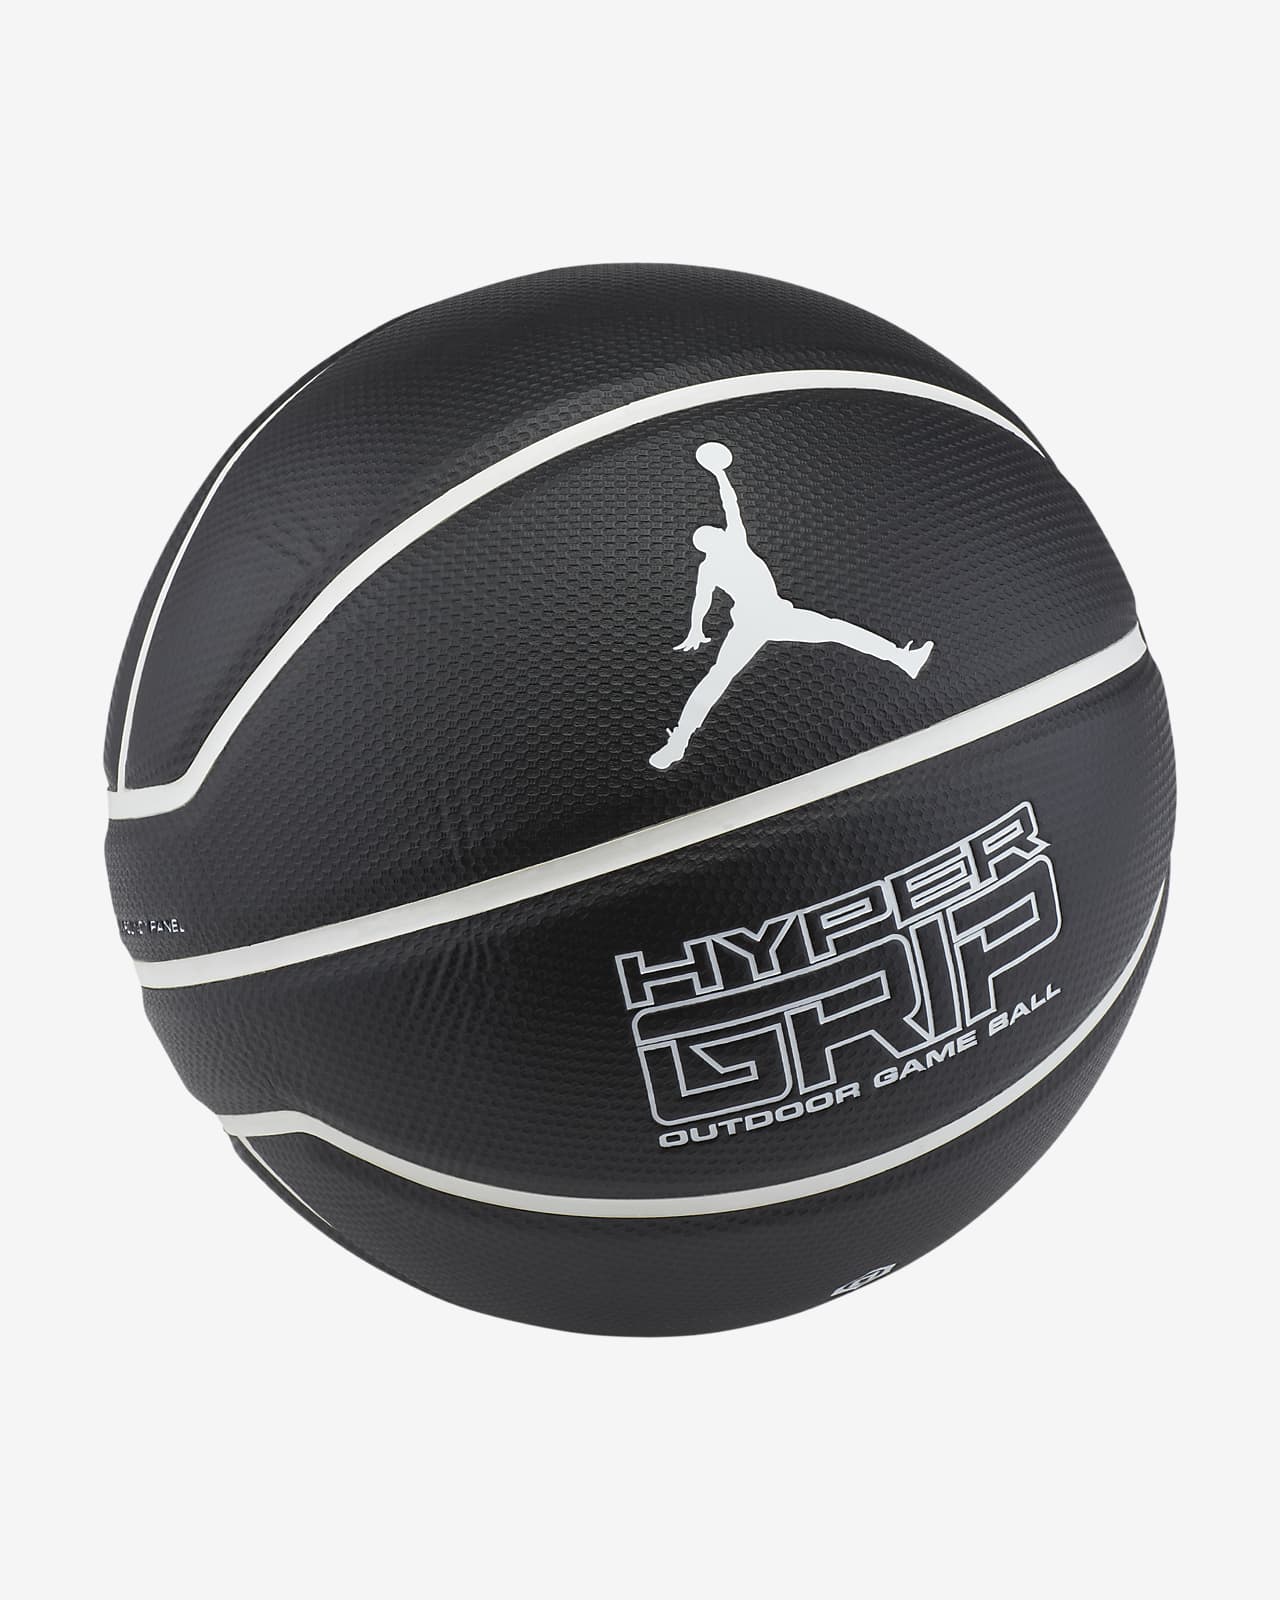 hyper grip outdoor game ball